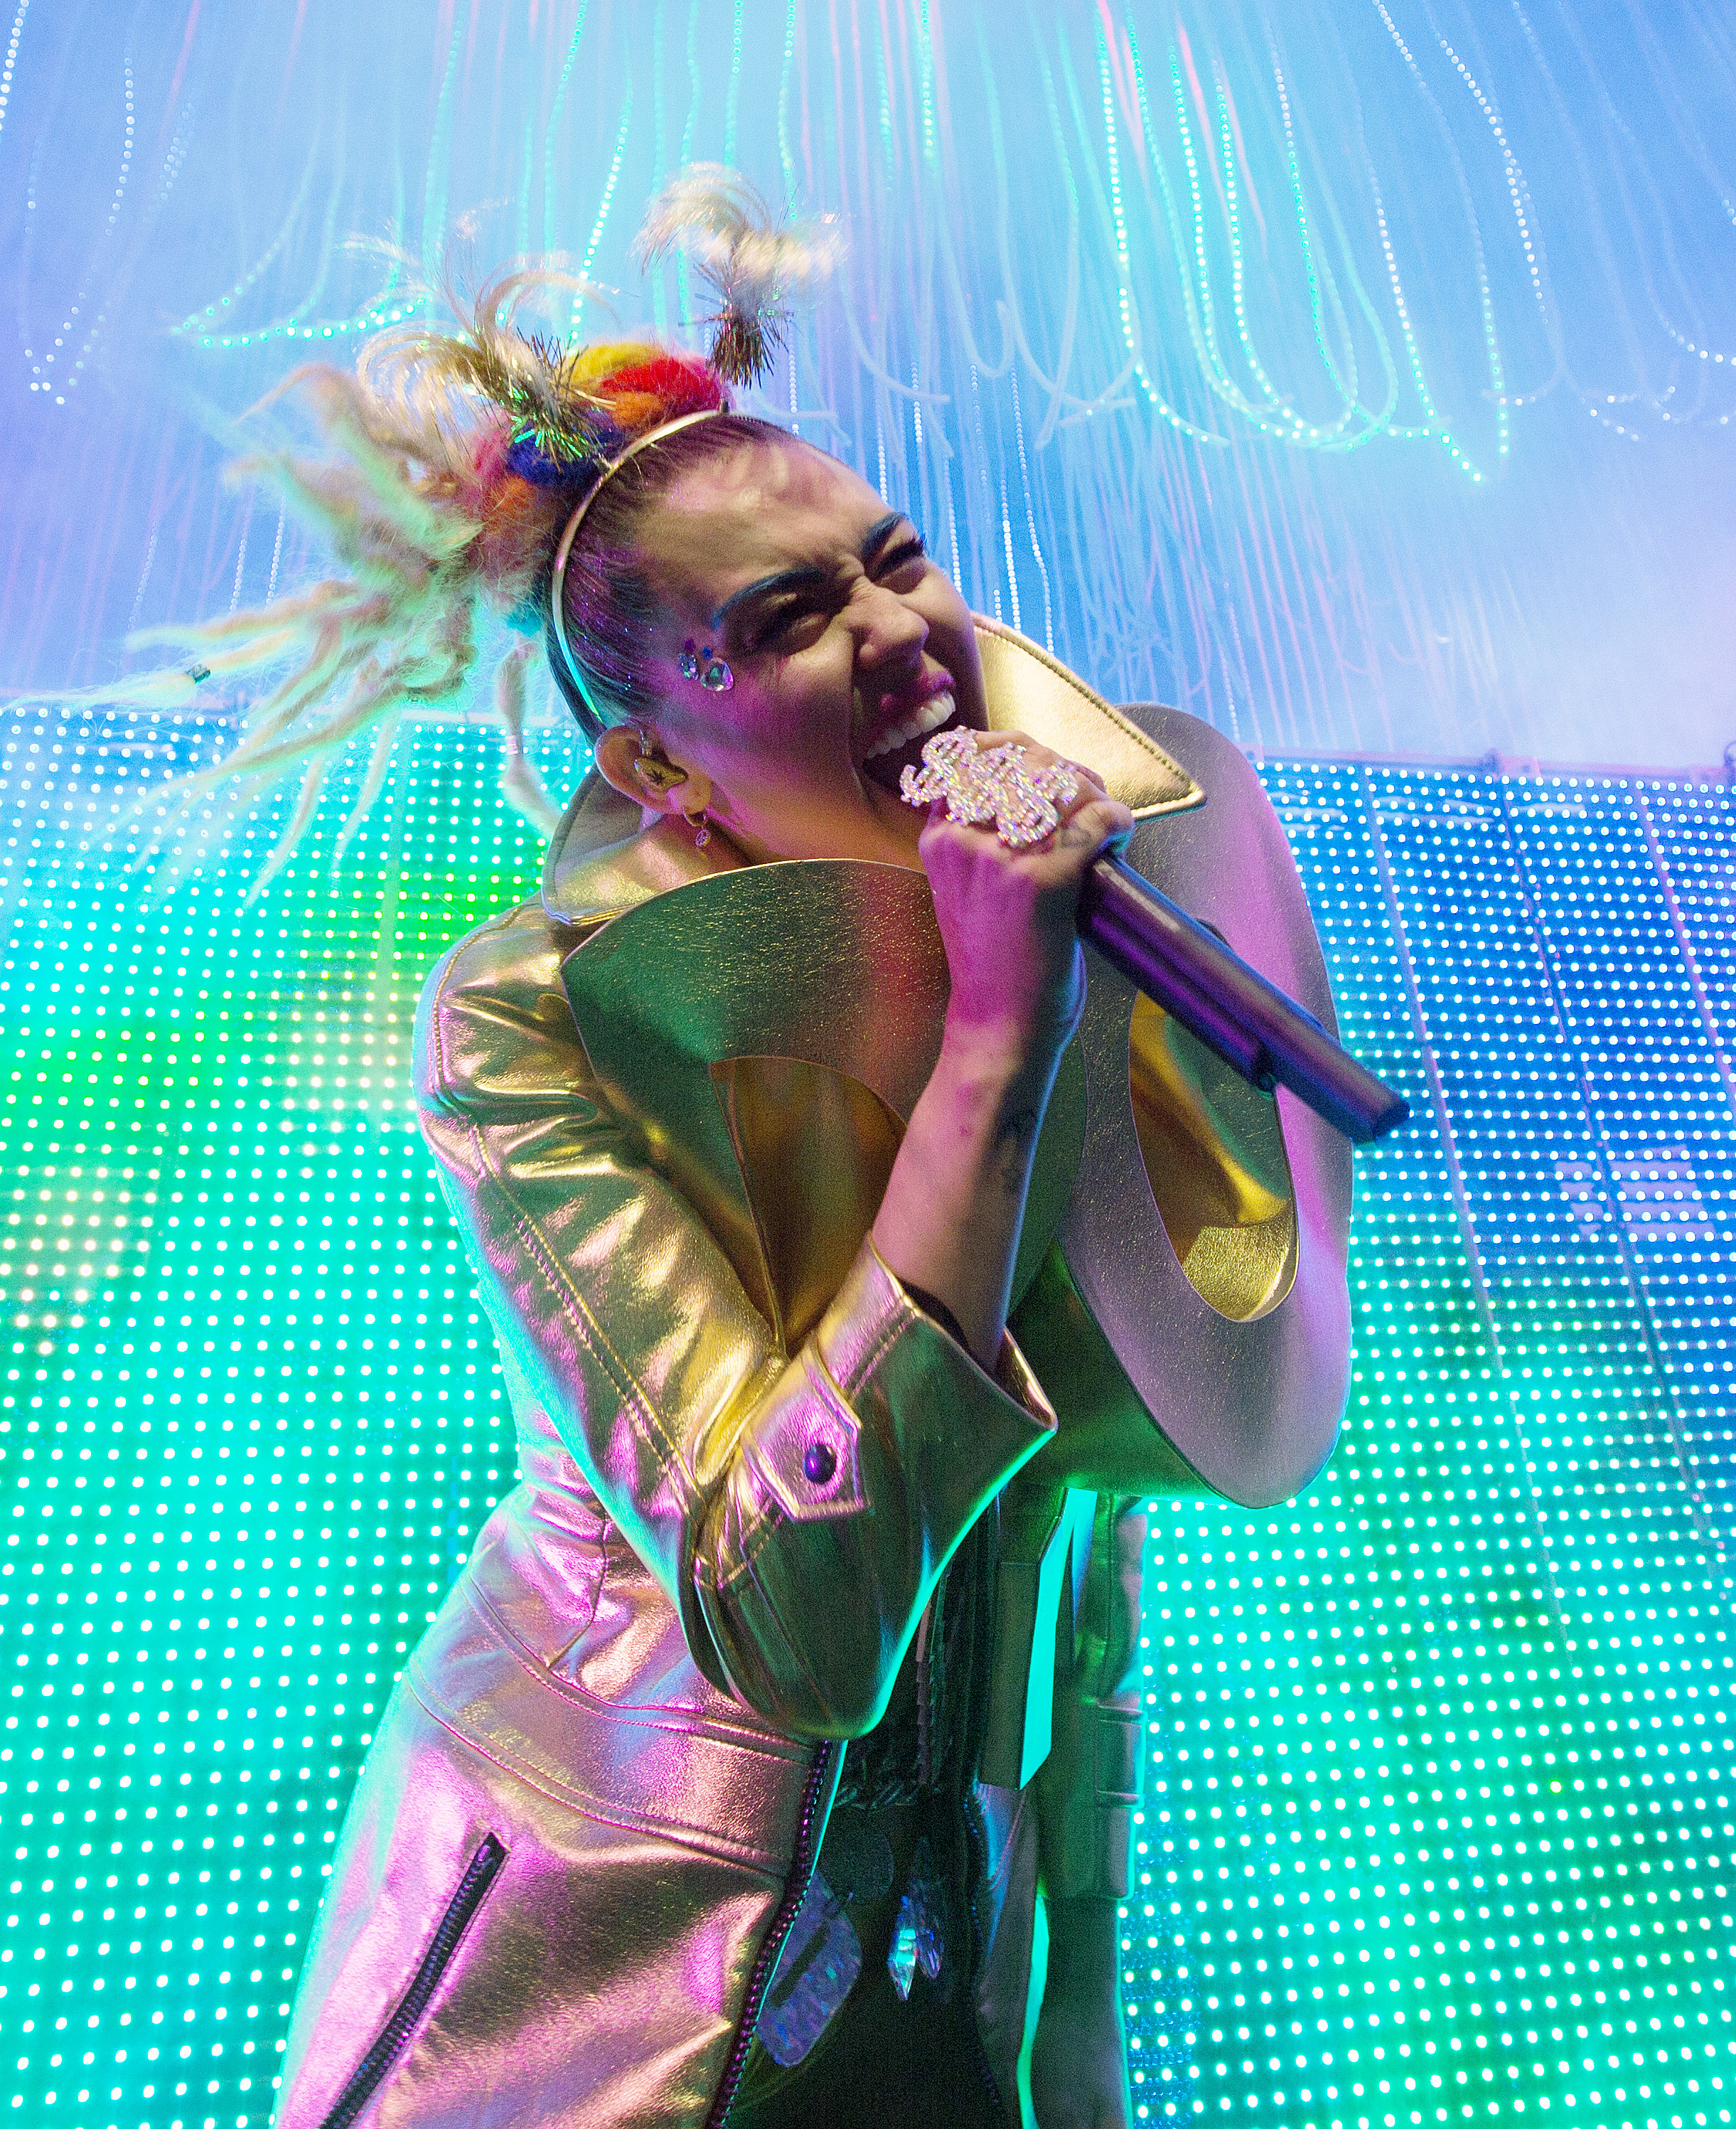 Miley Cyrus onstage